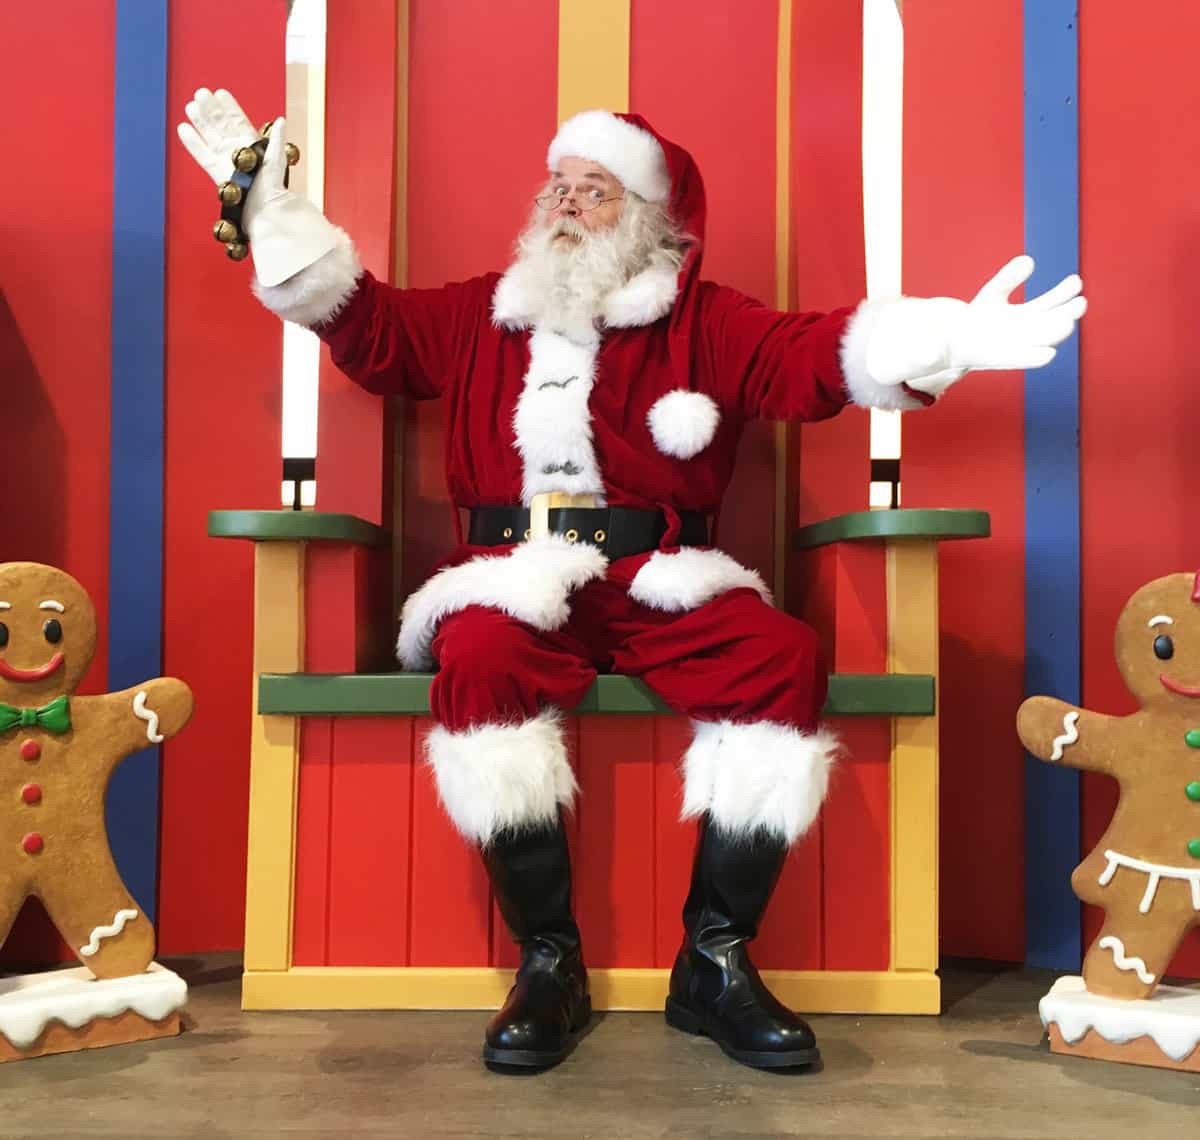 Visit Santa at Granary Road this year!